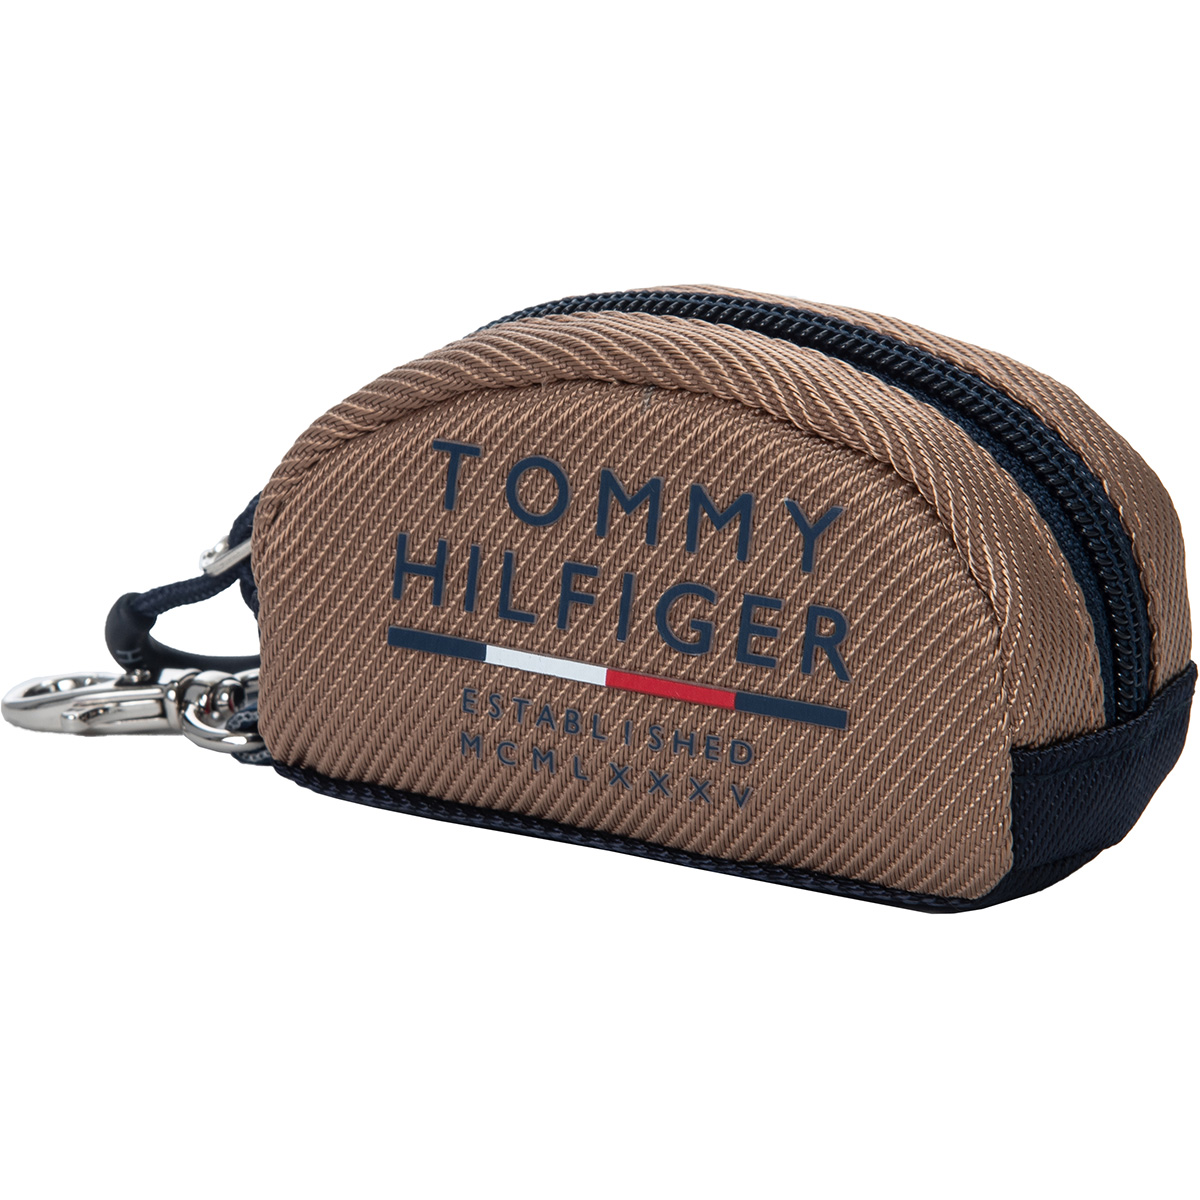 トミー ヒルフィガー ゴルフ(TOMMY HILFIGER GOLF) ゴルフボールケース